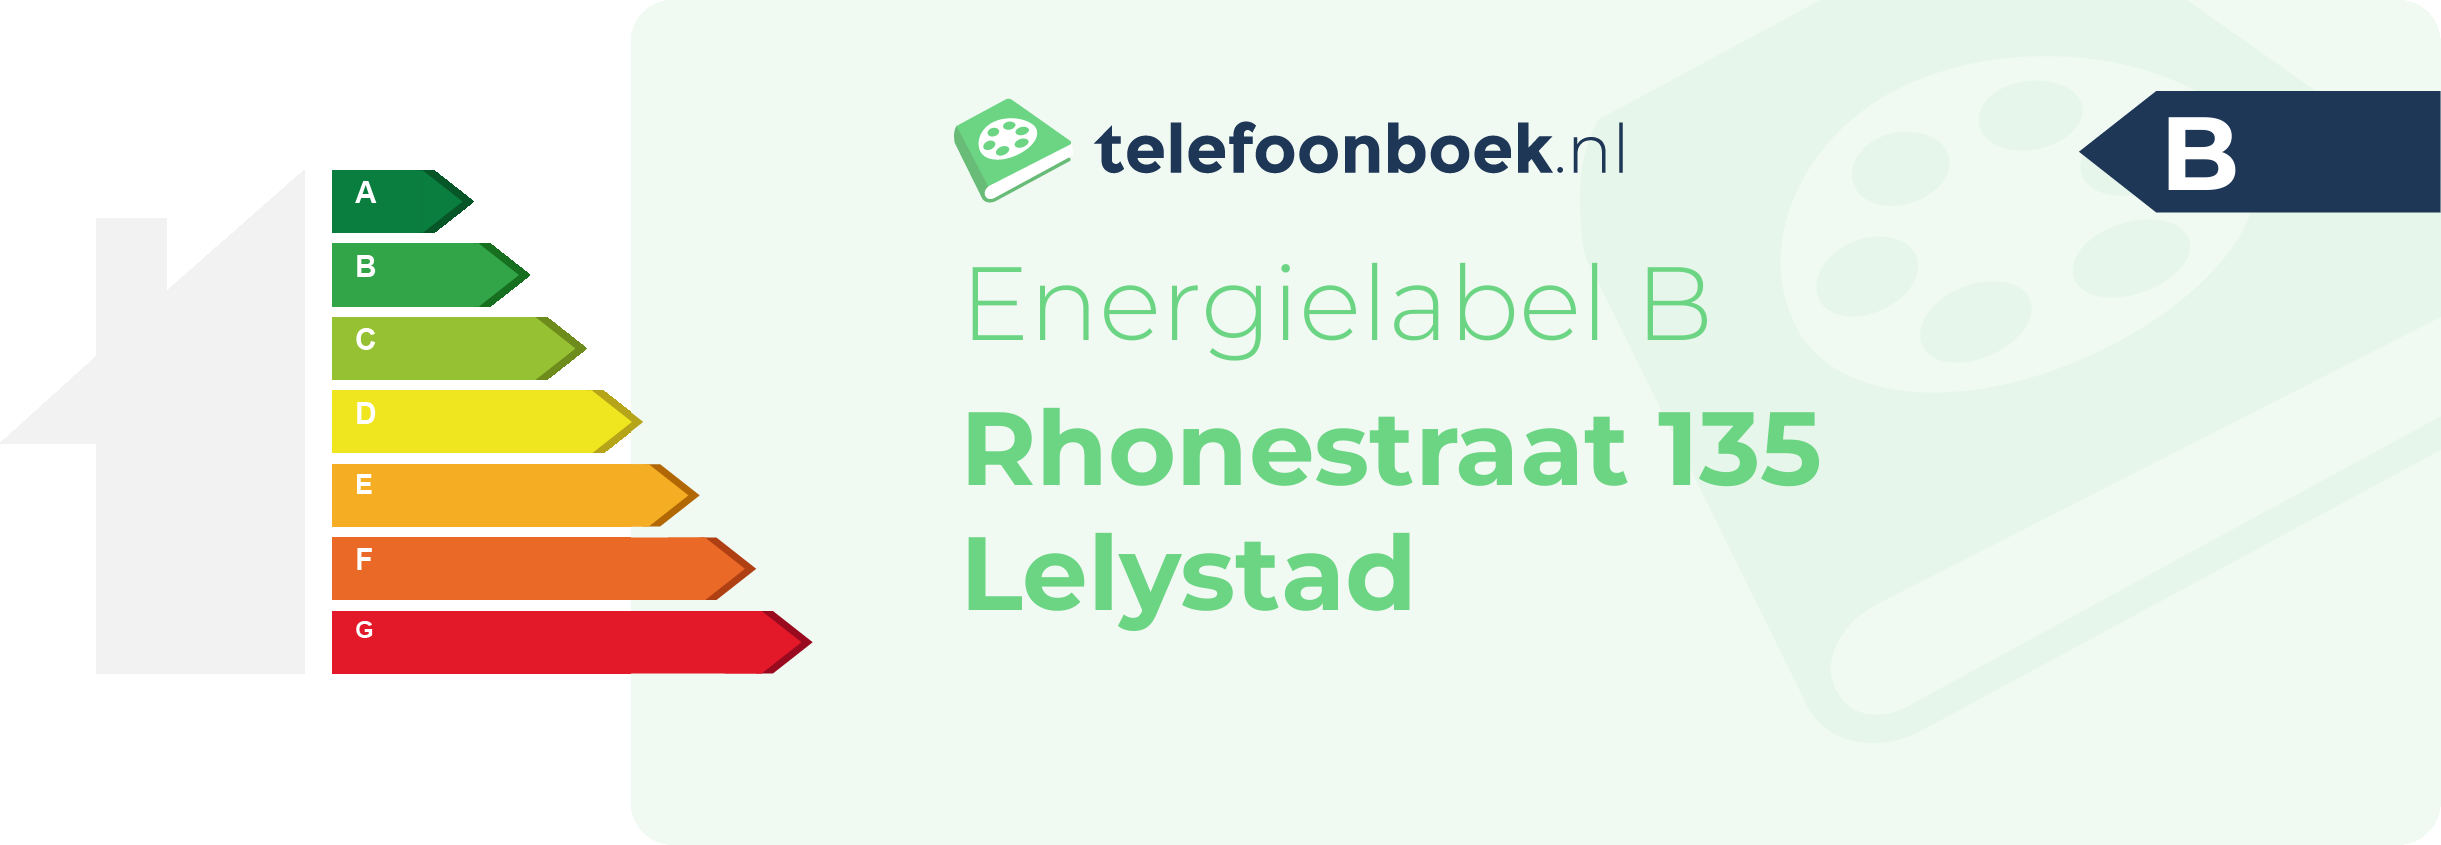 Energielabel Rhonestraat 135 Lelystad